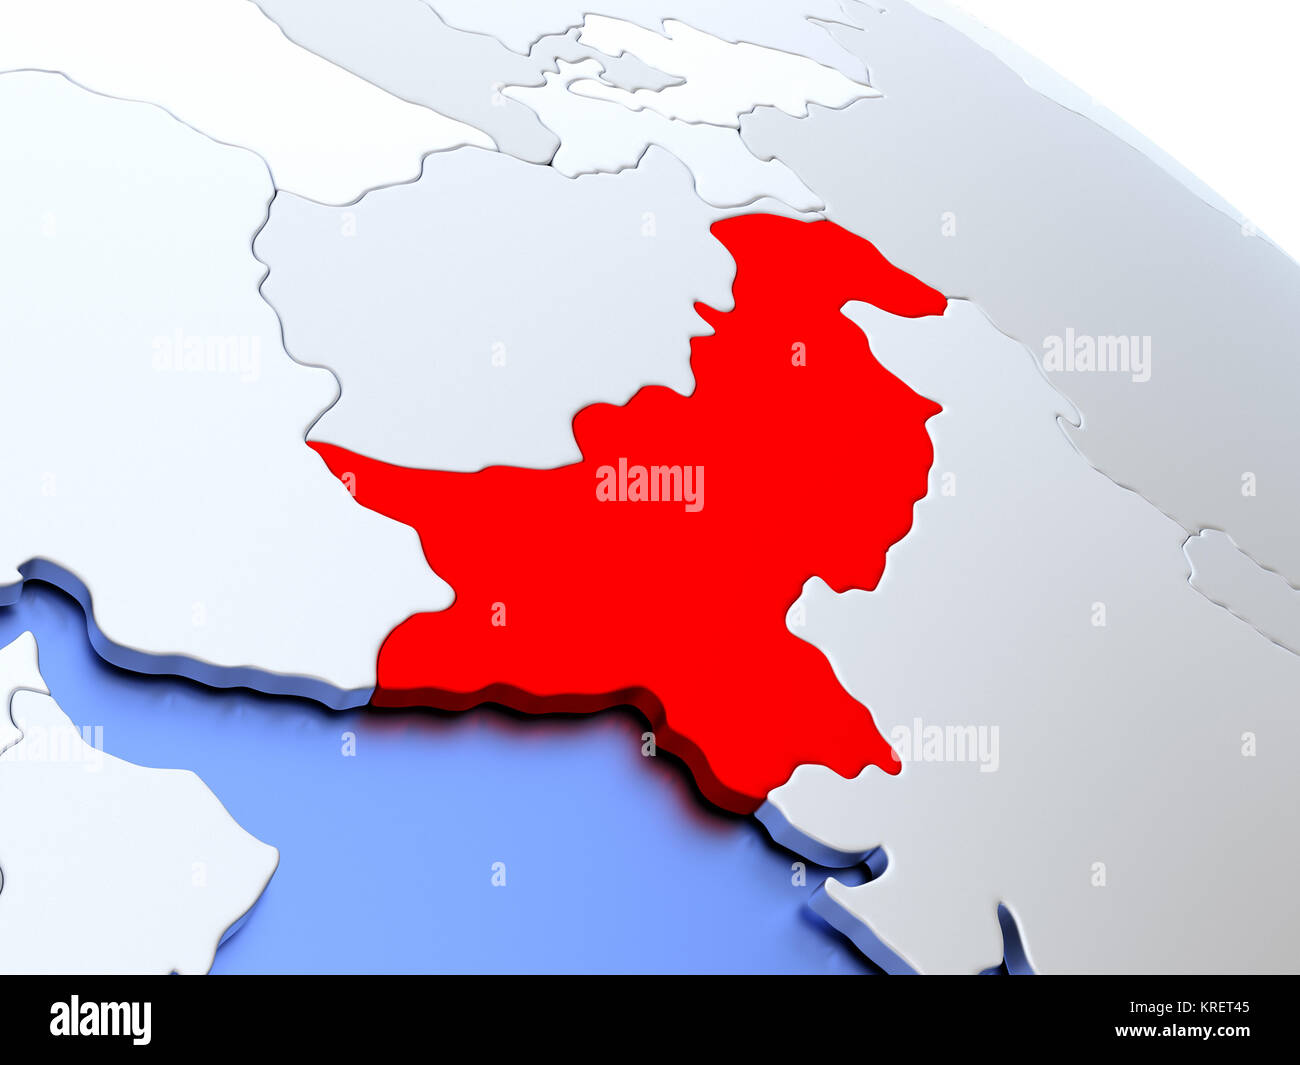 Pakistan on world map Stock Photo